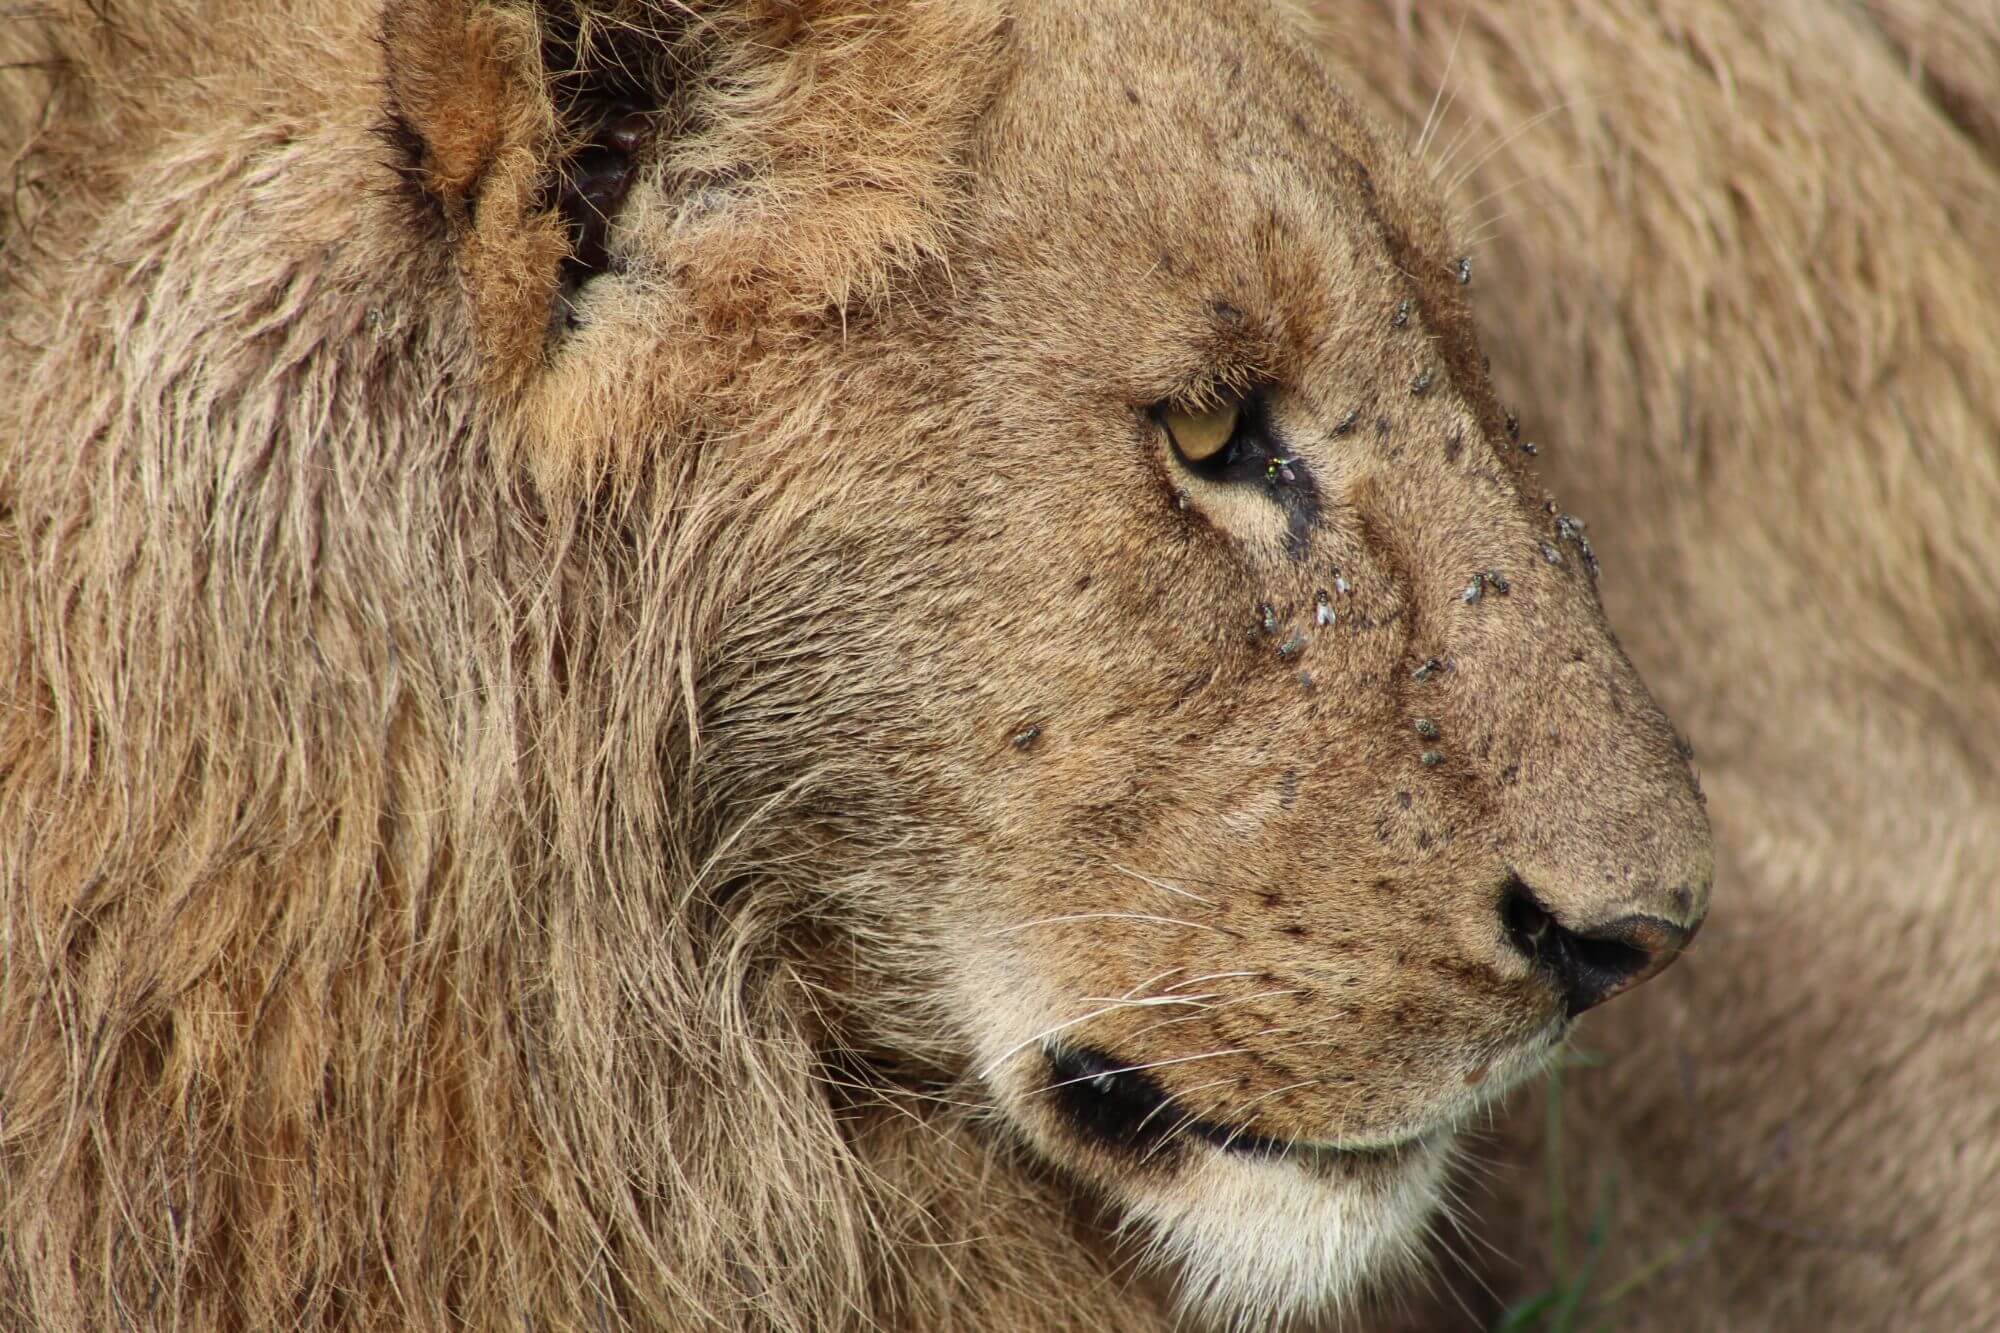 Endlosigkeit Serengeti image